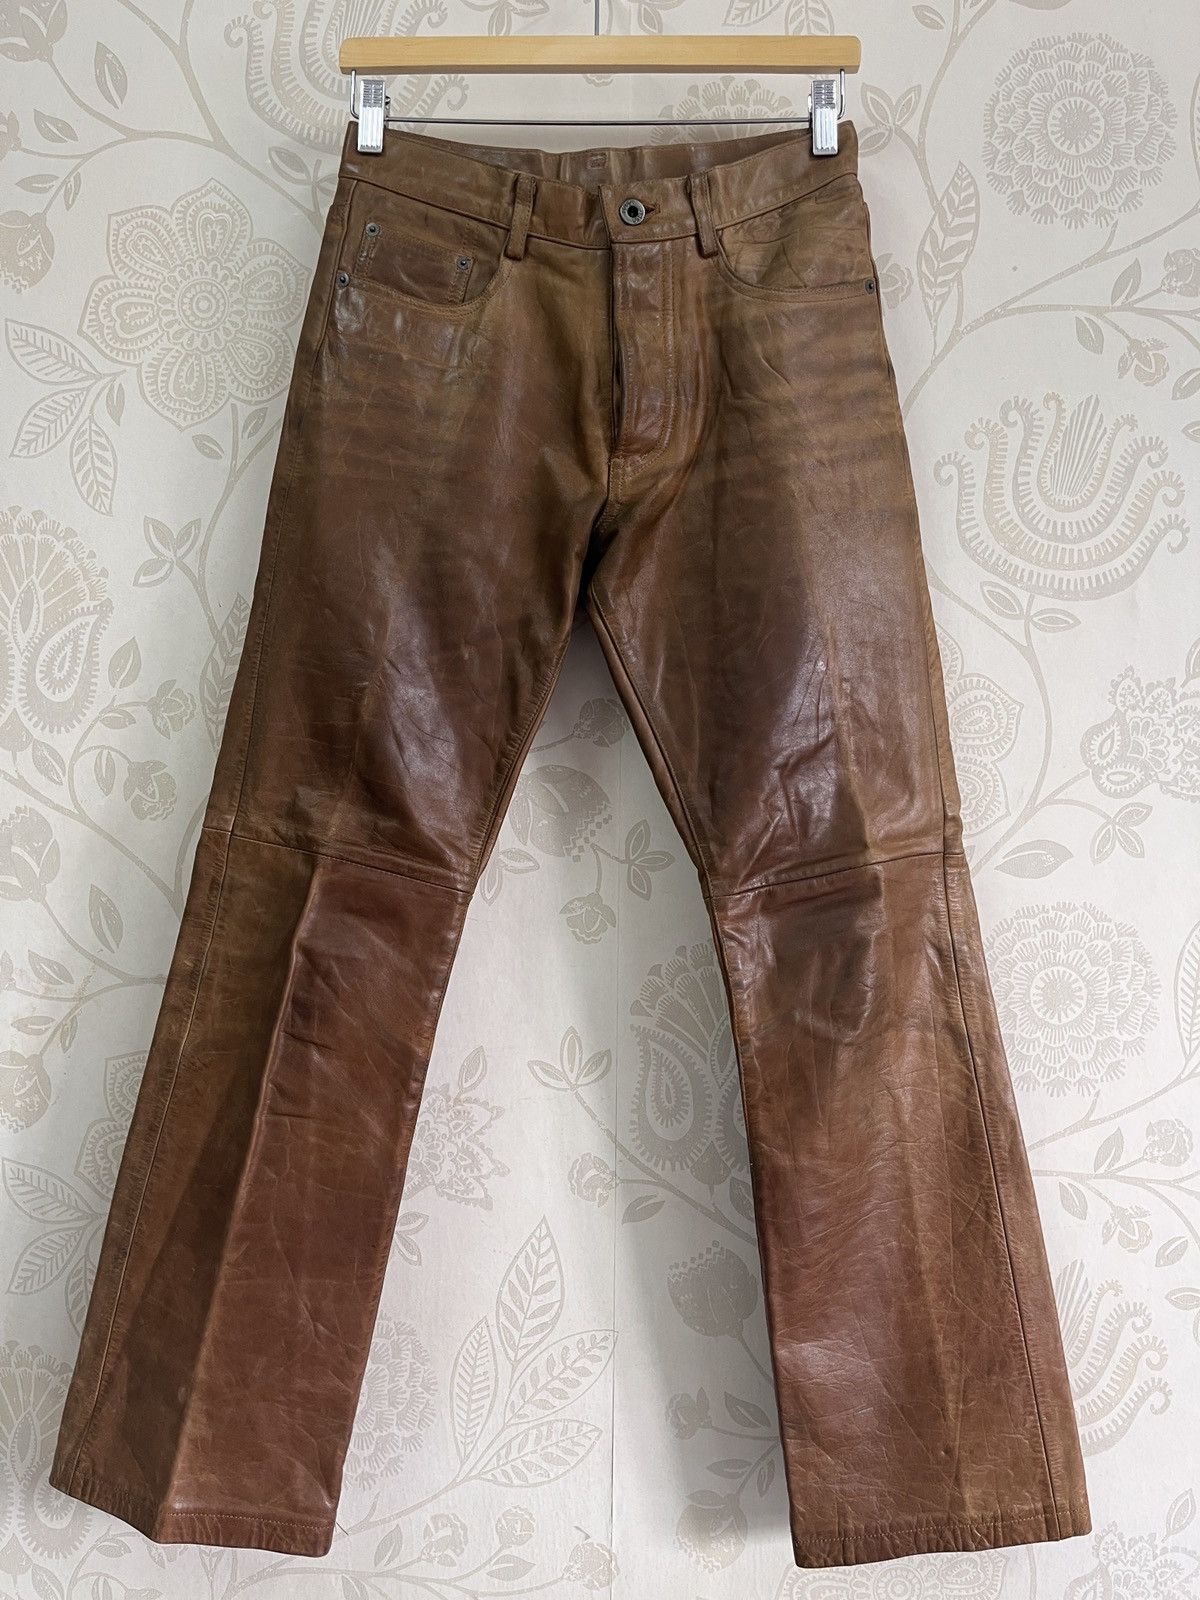 Genuine Leather - Japan 5351 Pour Les Homme Leather Pants - 22